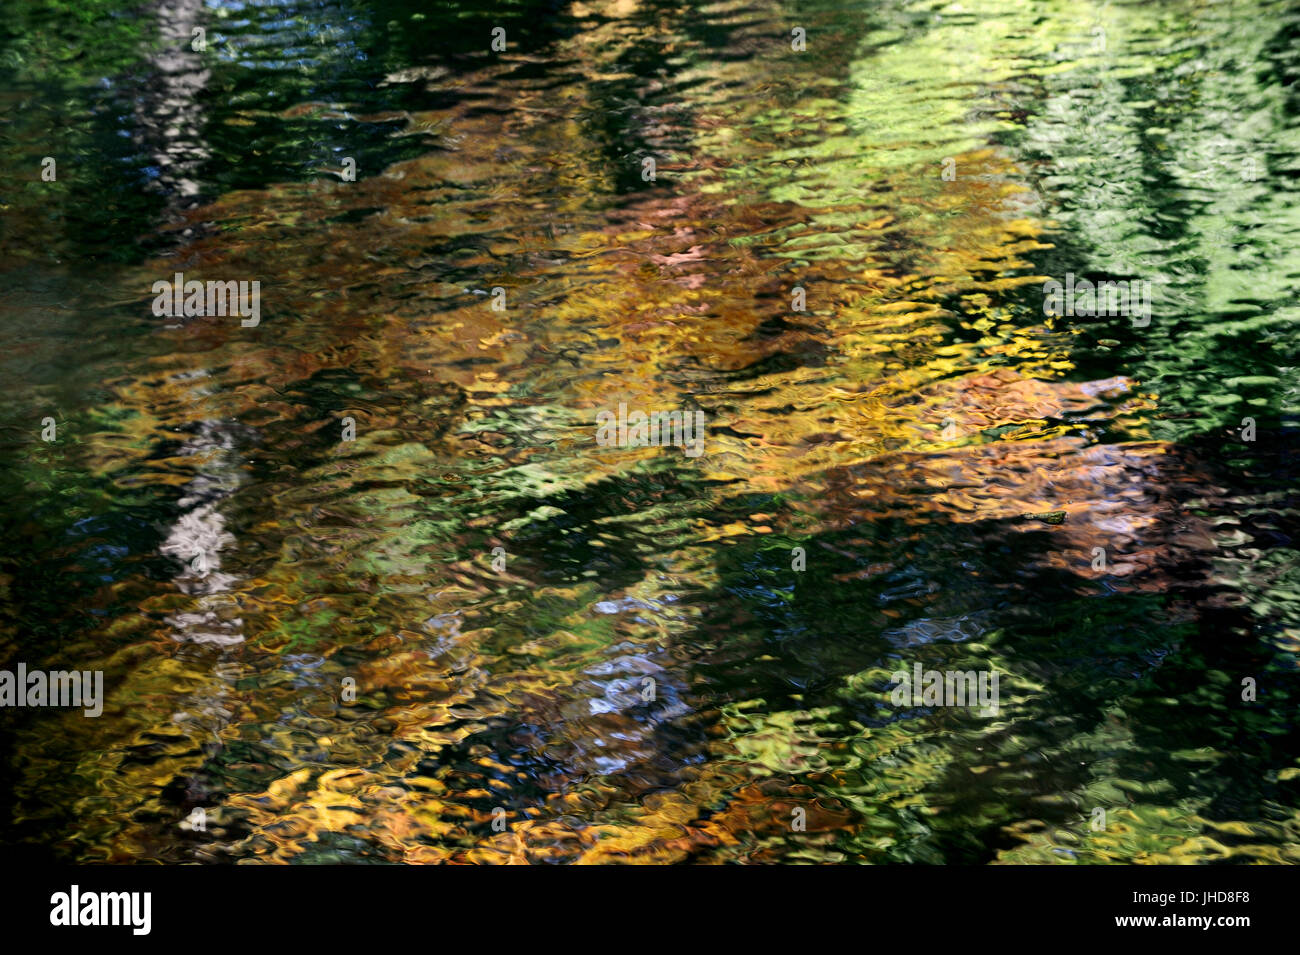 En miroir des arbres dans l'eau, en Rhénanie du Nord-Westphalie, Allemagne | Baeume spiegeln sich im Wasser, Nordrhein-Westfalen, Deutschland Banque D'Images